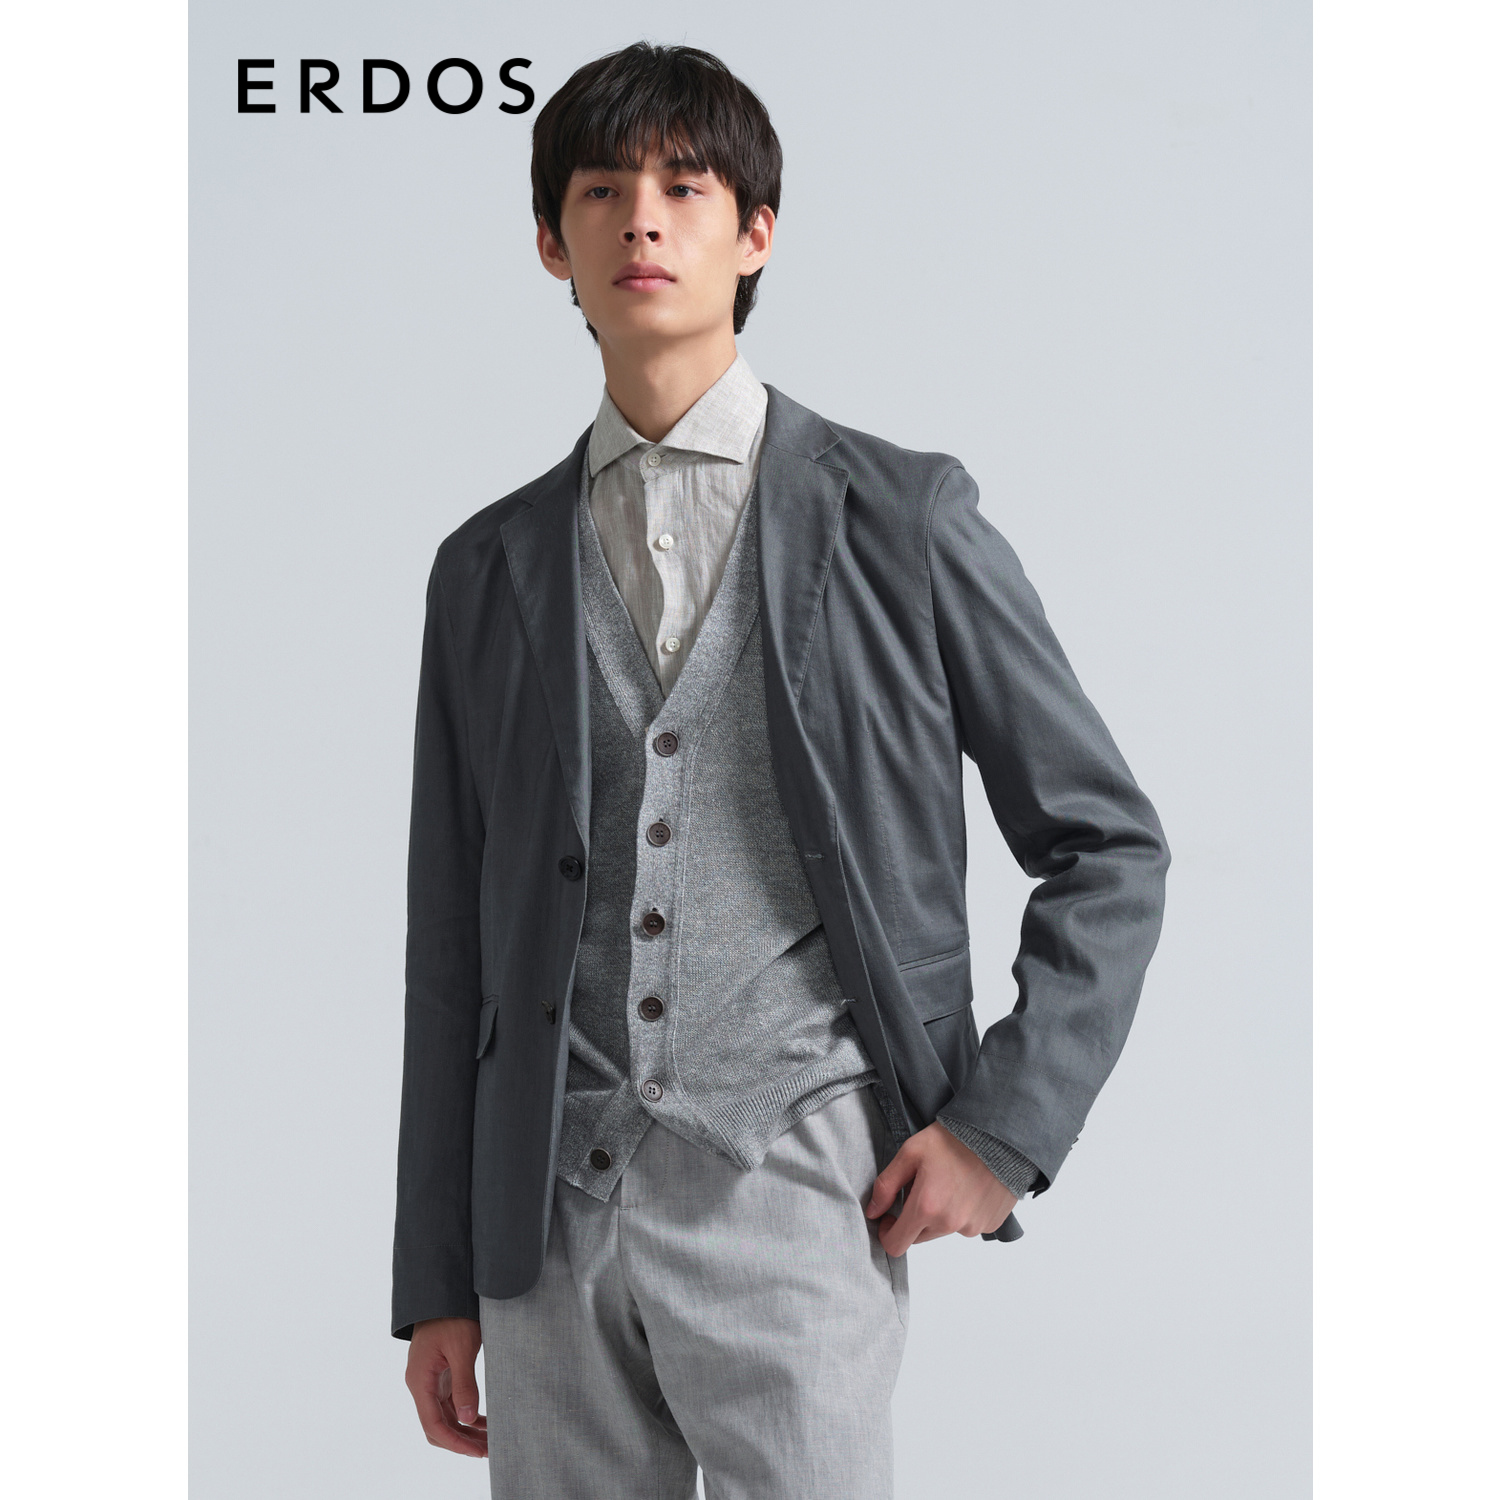 ERDOS 男装西服春夏款休闲外套单排扣舒适男上衣简约易搭配西装